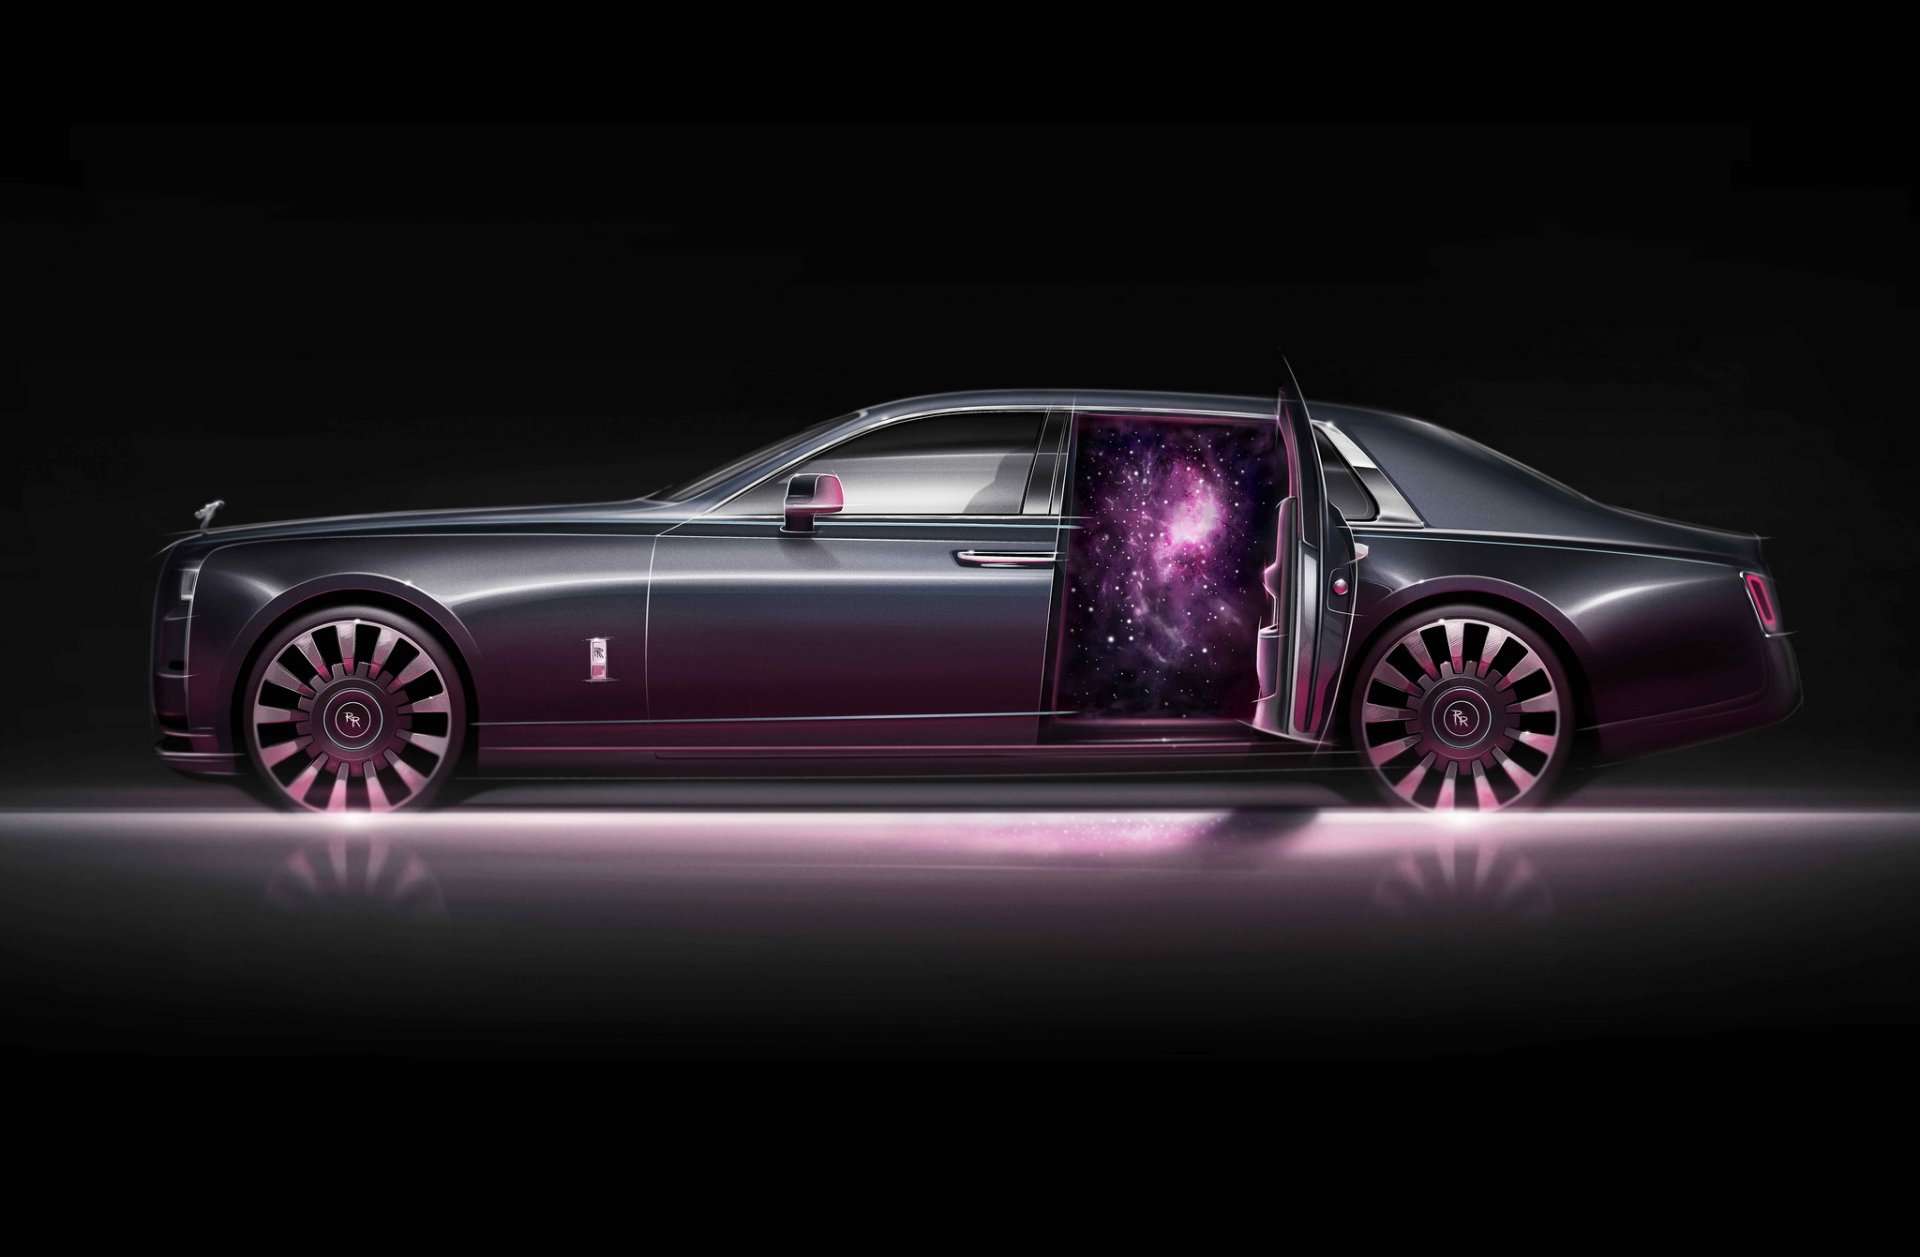 Rolls-Royce Phantom Tempus แรงบันดาลใจจากเวลาและจักรวาล เพียง 20 คันในโลก 